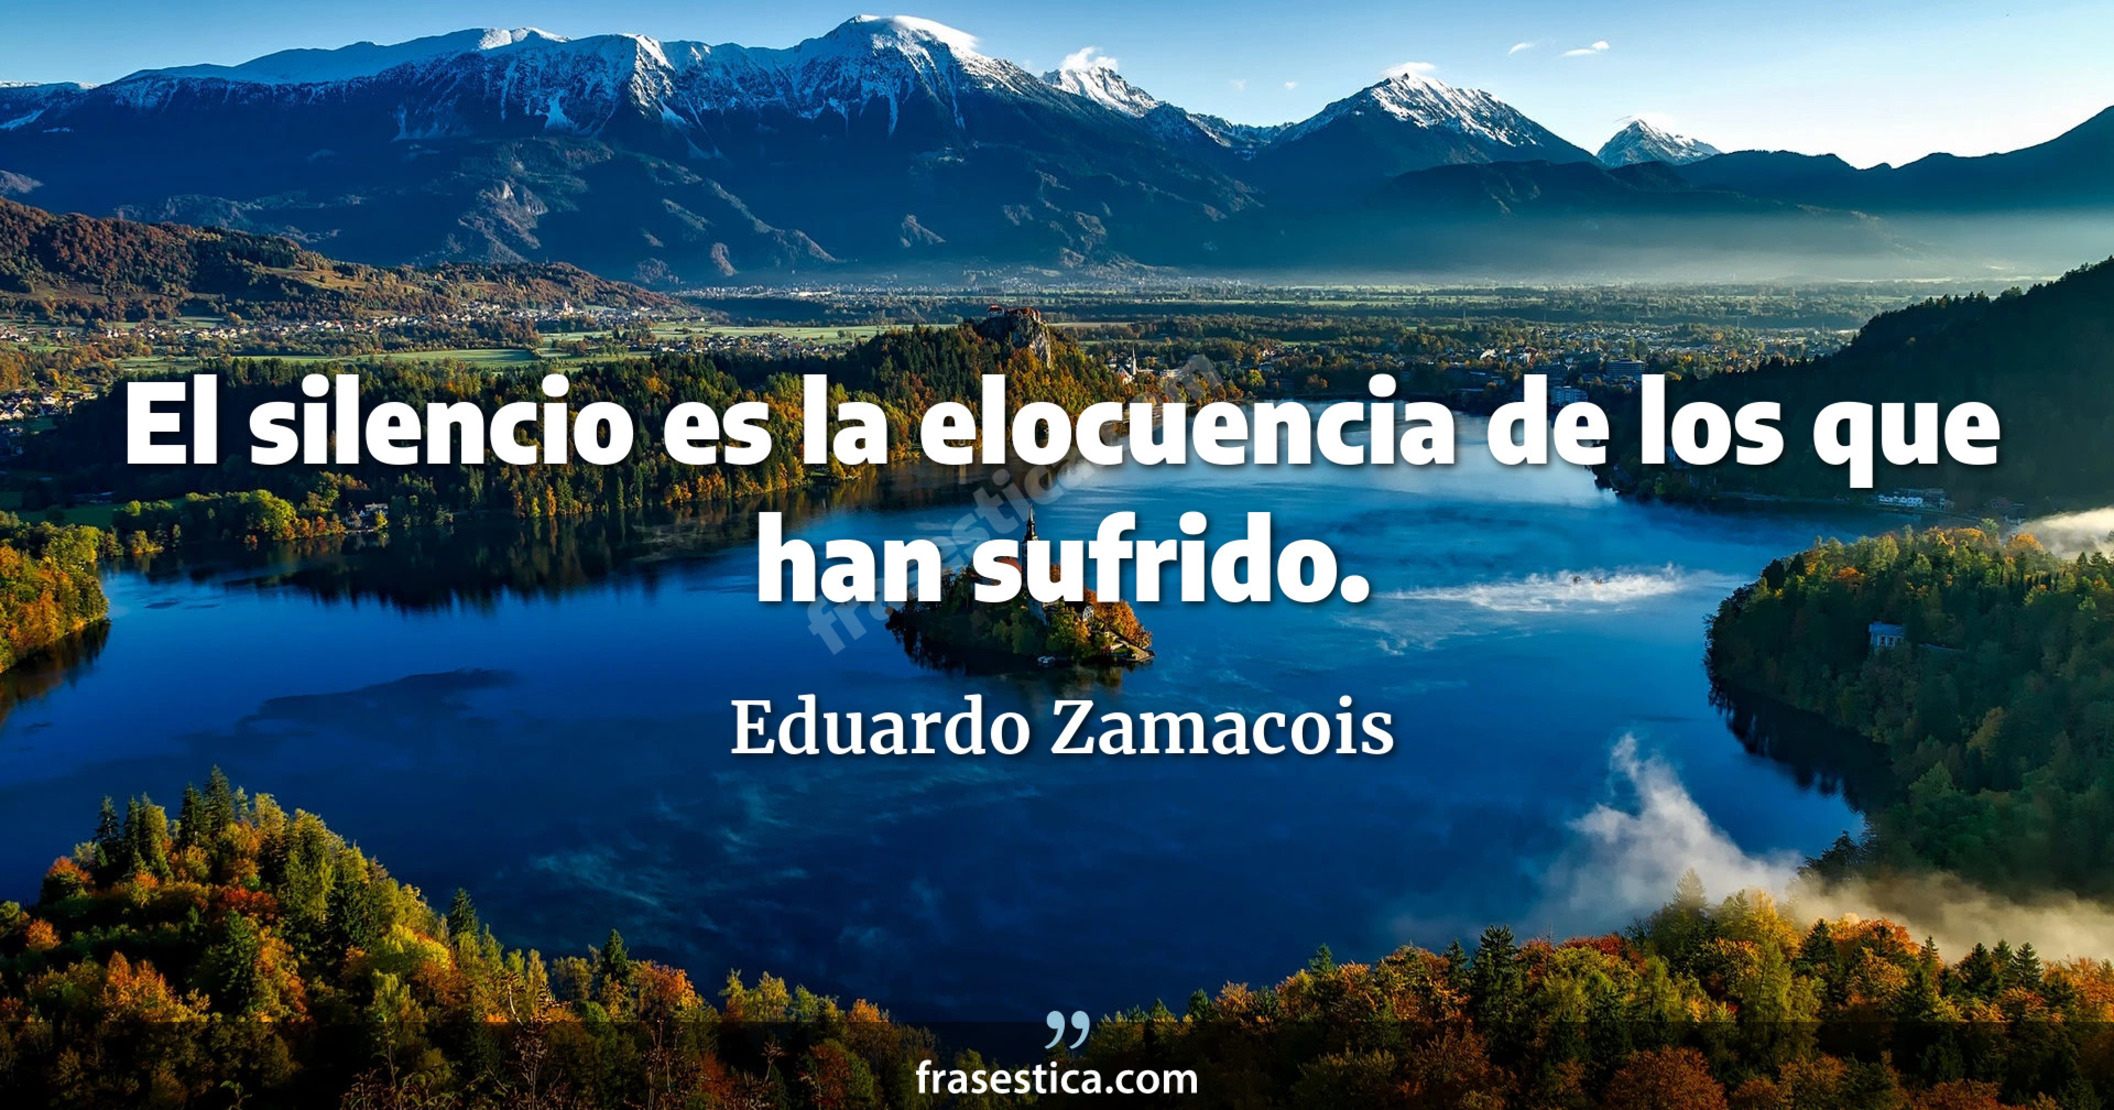 El silencio es la elocuencia de los que han sufrido. - Eduardo Zamacois